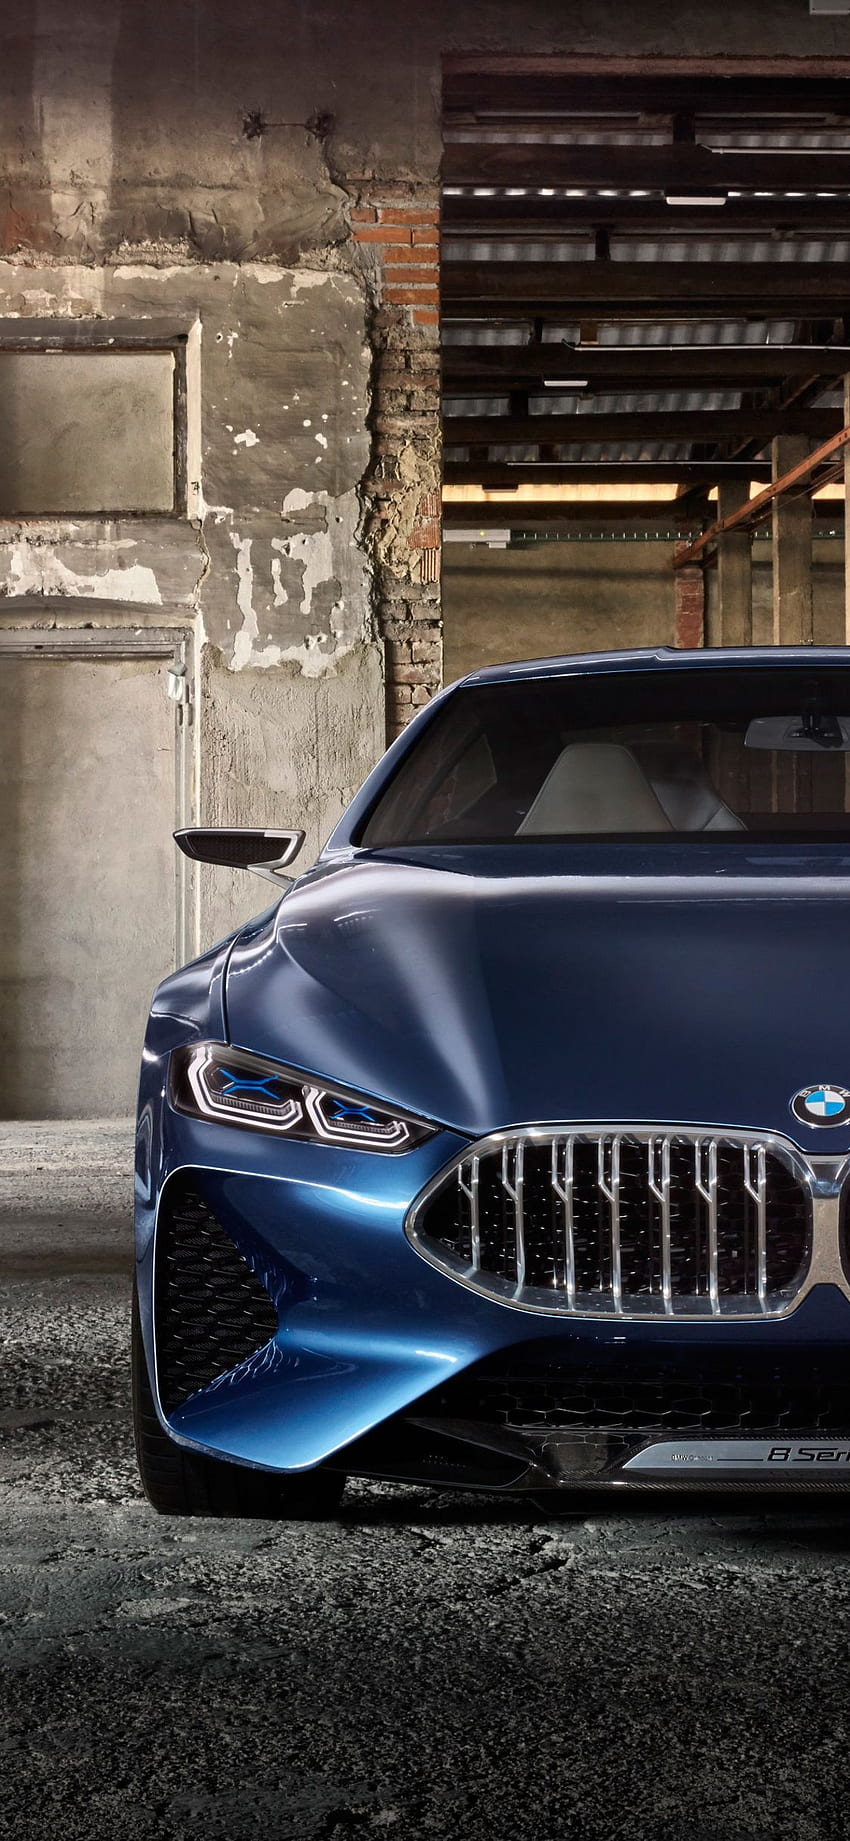 Với hình nền xe hơi BMW, bạn sẽ được tận hưởng vẻ đẹp hoàn hảo của một dòng xe đến từ Đức. Sự kết hợp giữa công nghệ và thiết kế của BMW mang đến cho người xem những trải nghiệm thú vị về xe hơi và tốc độ.